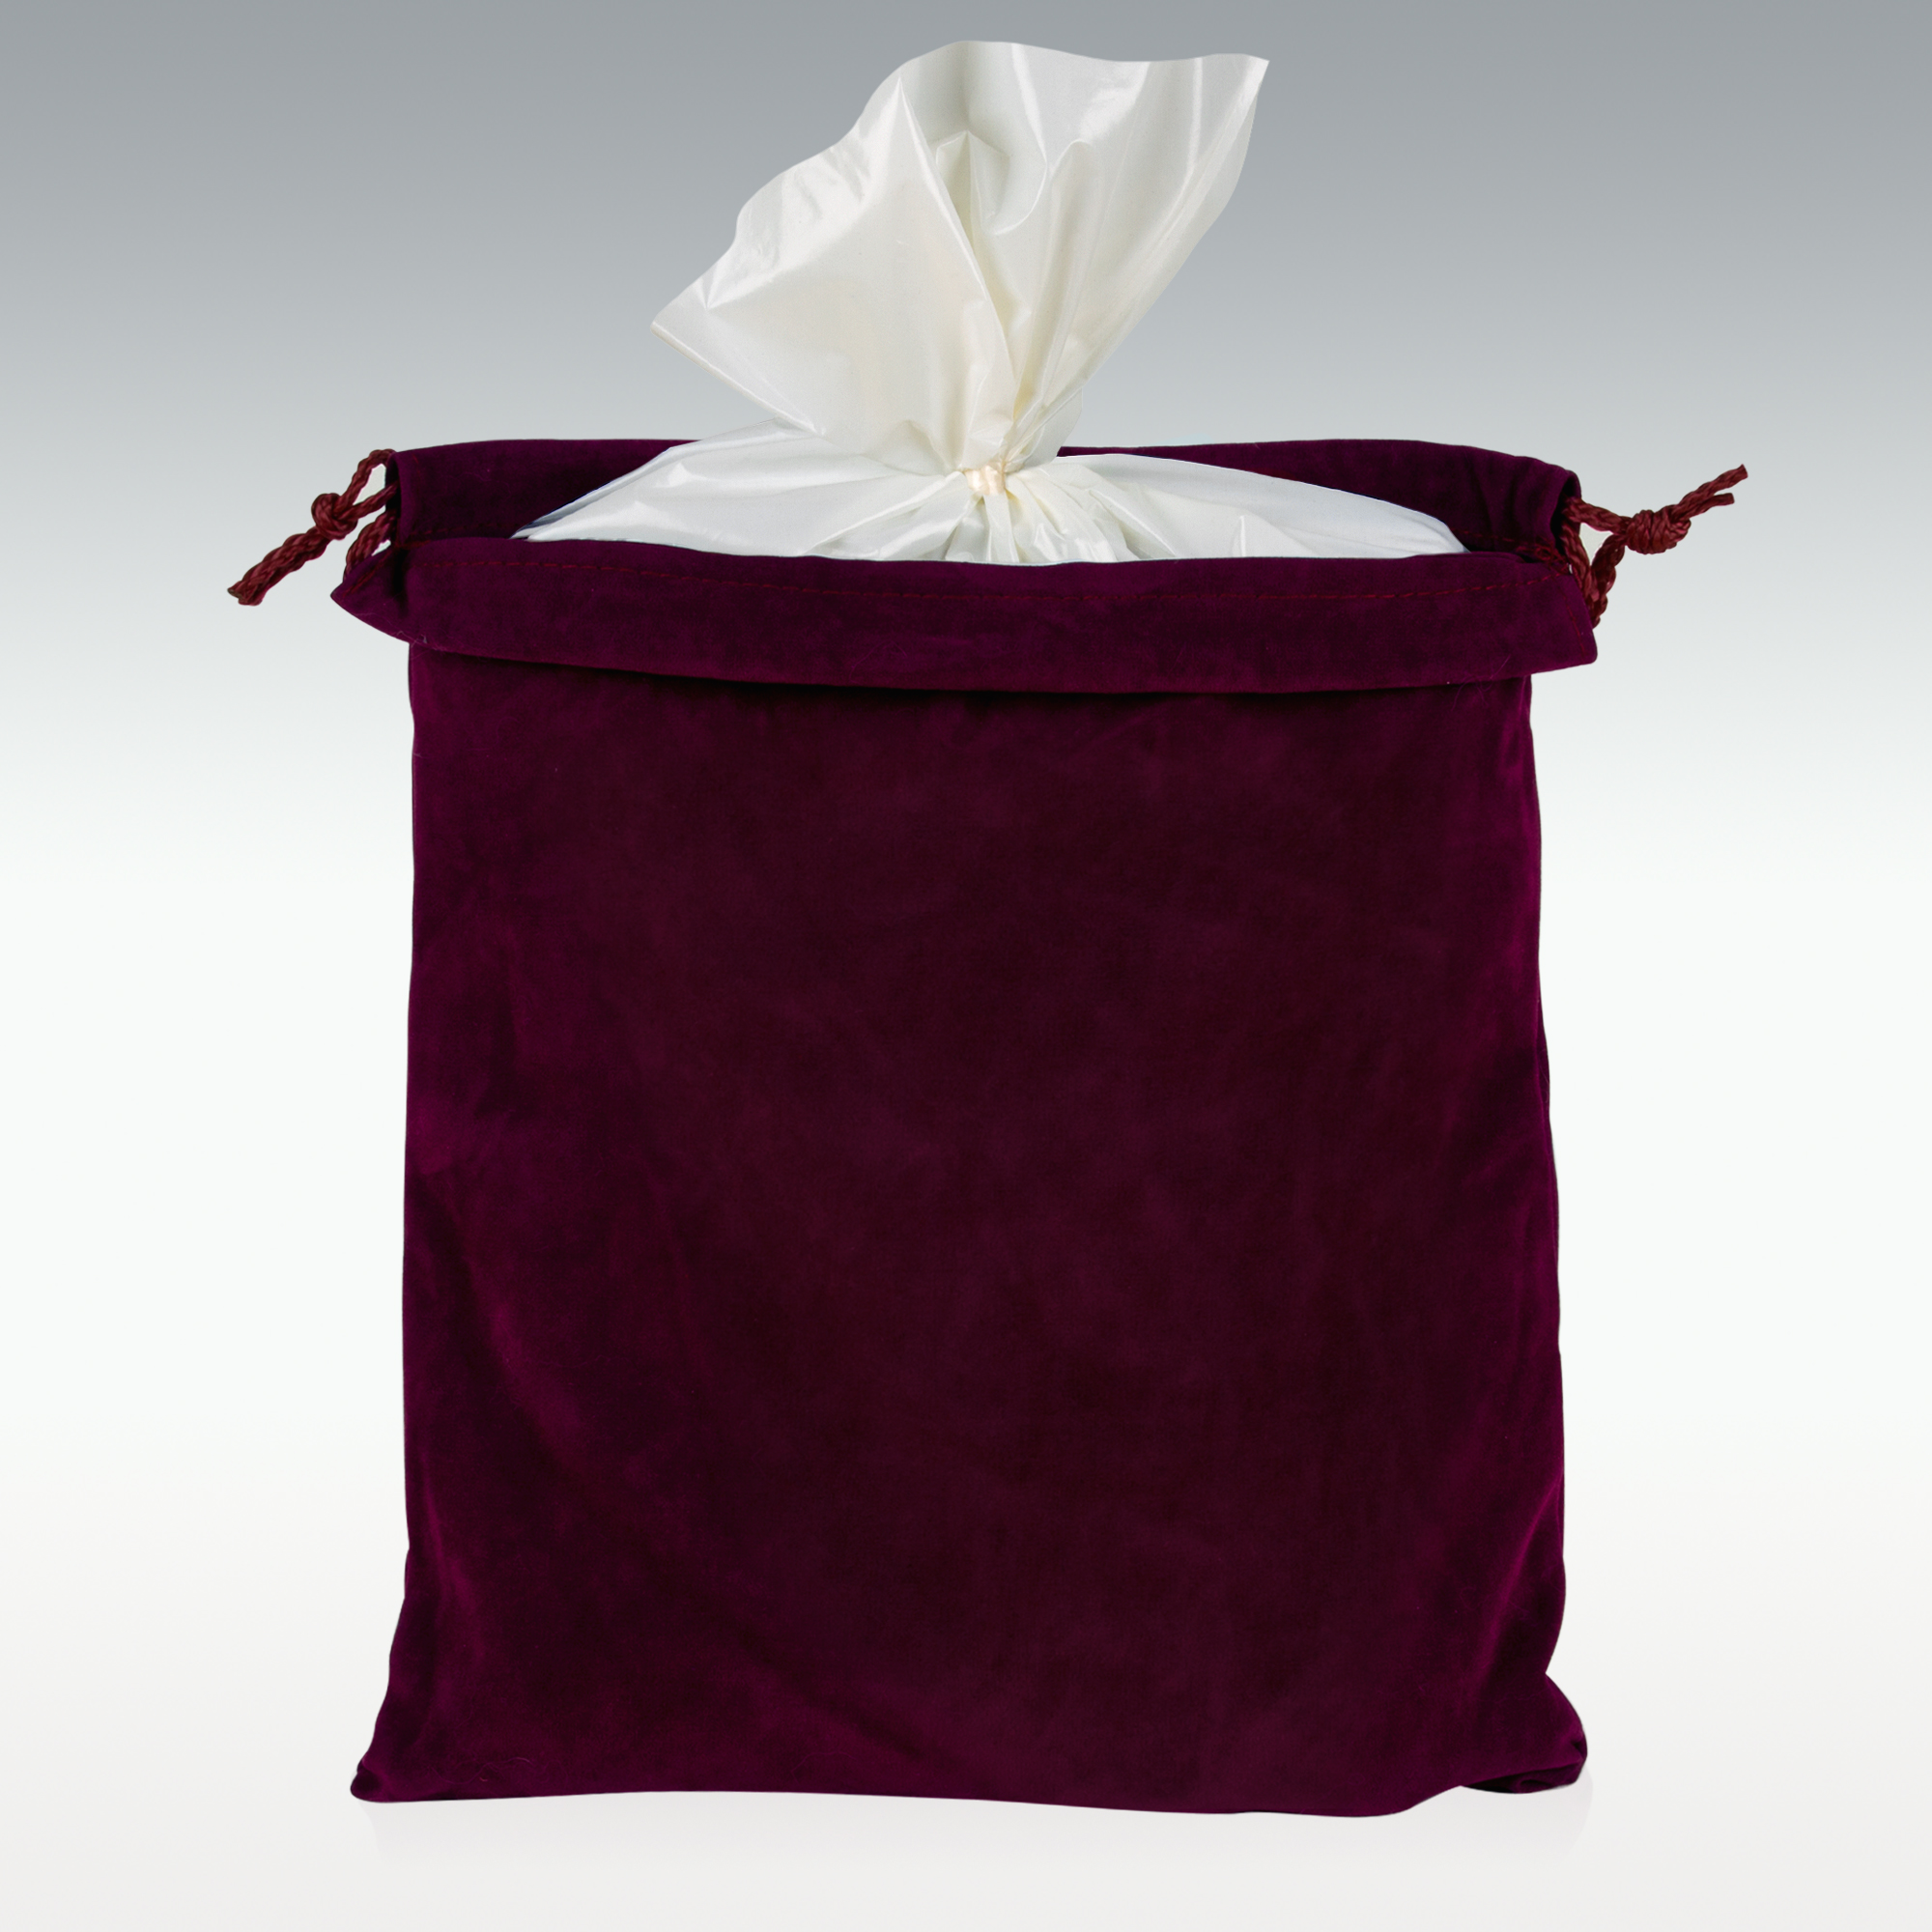 Large Burgundy Velveteen Urn Bag 13" x 15" $5.00 Free shipping from California 